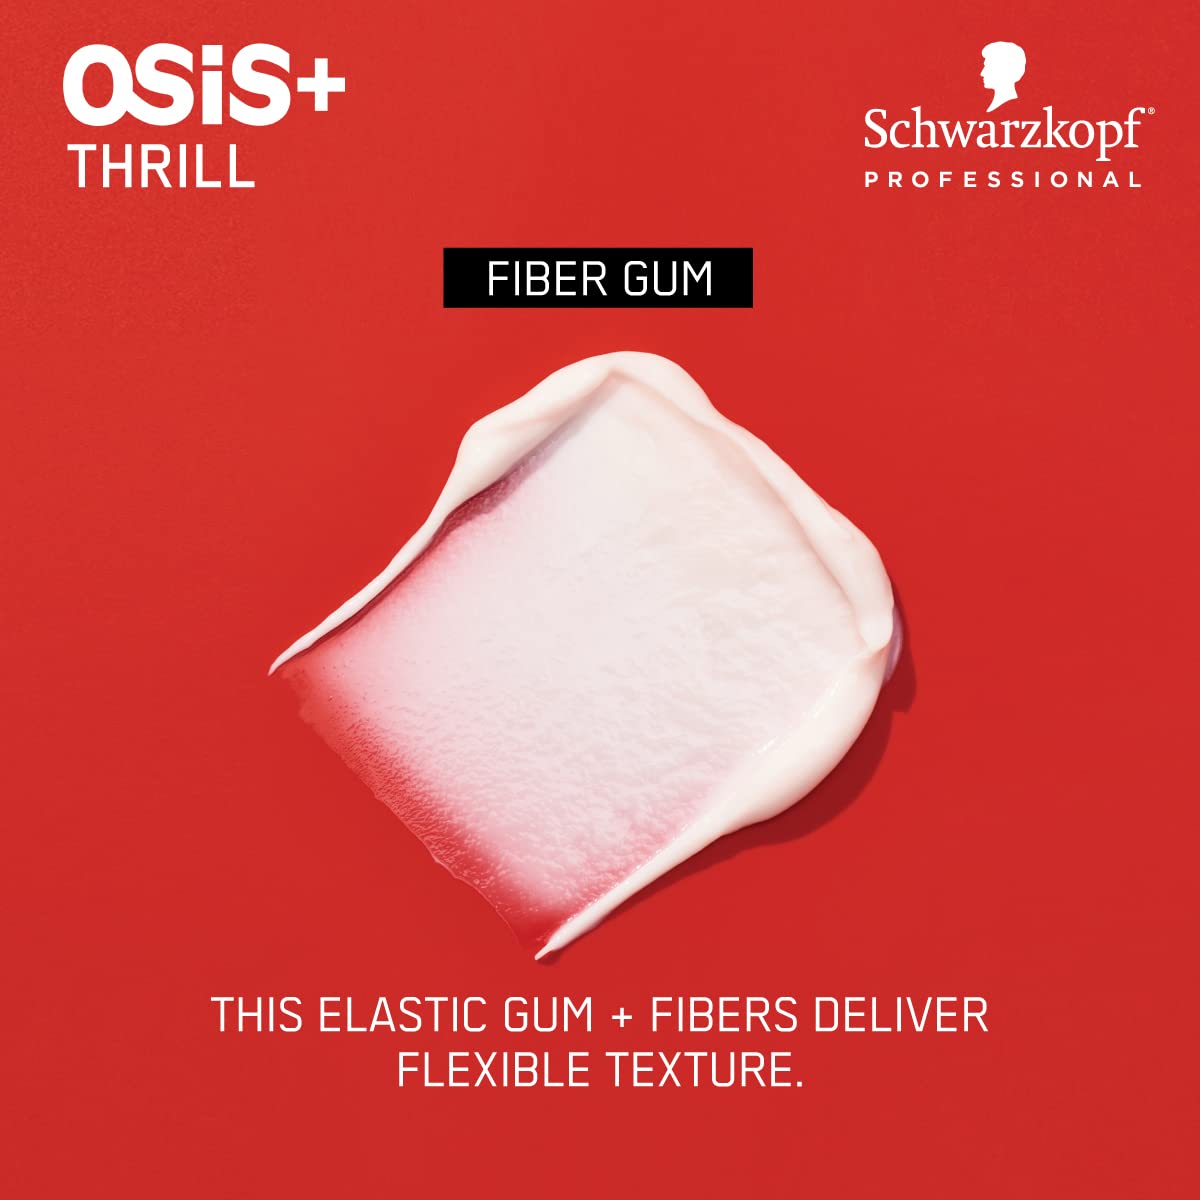 OSiS+ THRILL Fibre Gum, 3.38-Ounce